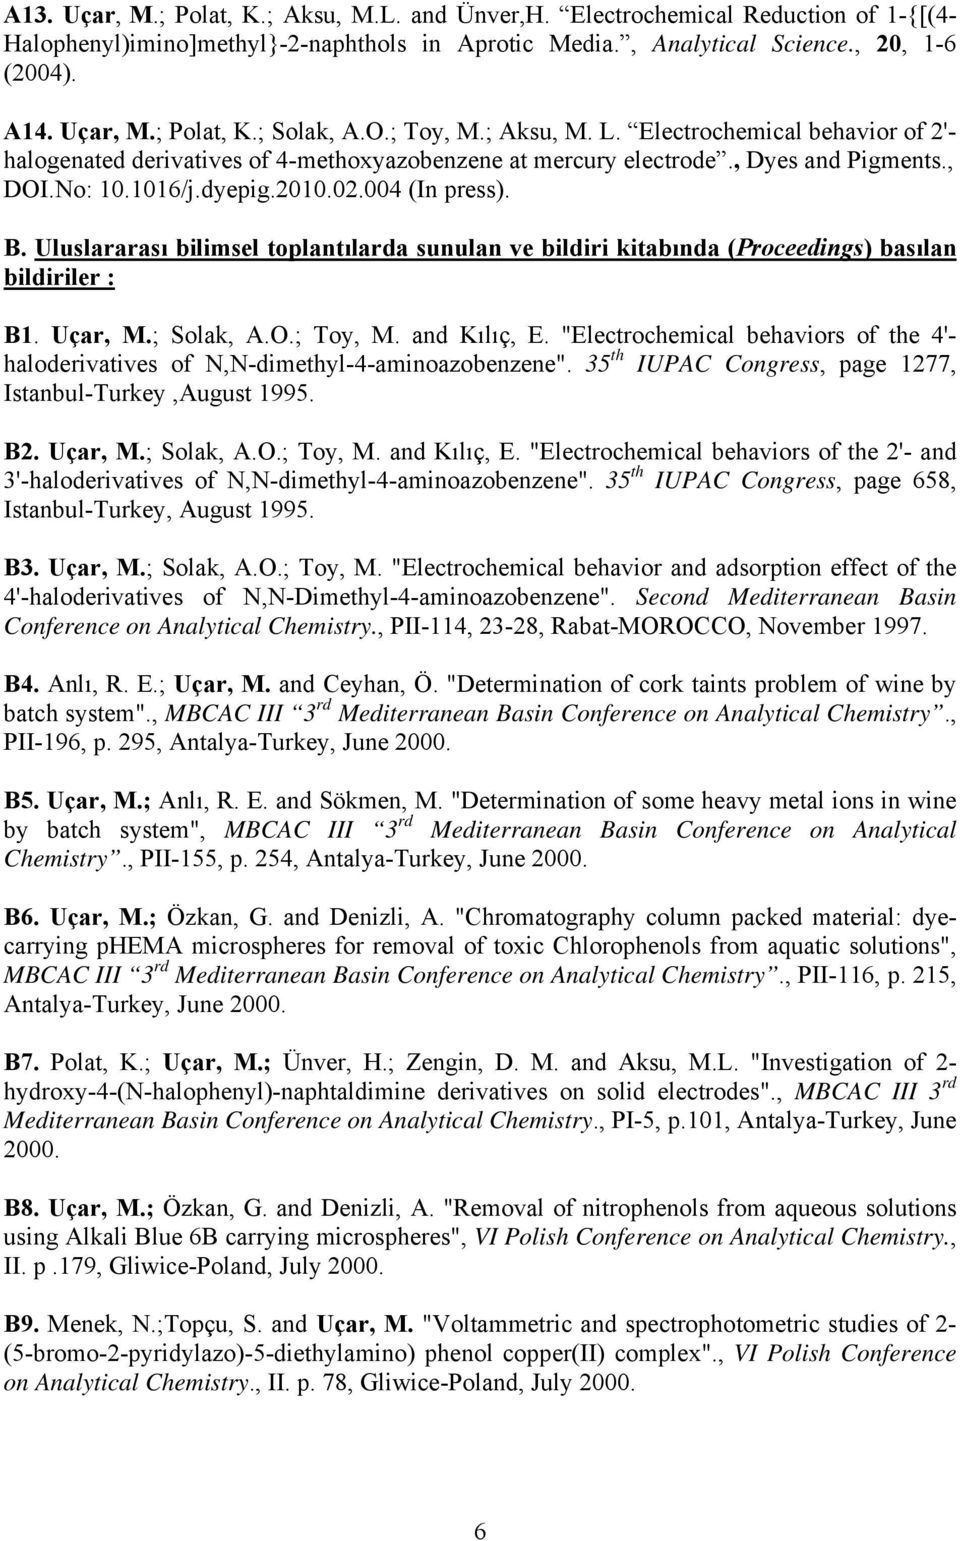 Uluslararası bilimsel toplantılarda sunulan ve bildiri kitabında (Proceedings) basılan bildiriler : B1. Uçar, M.; Solak, A.O.; Toy, M. and Kılıç, E.